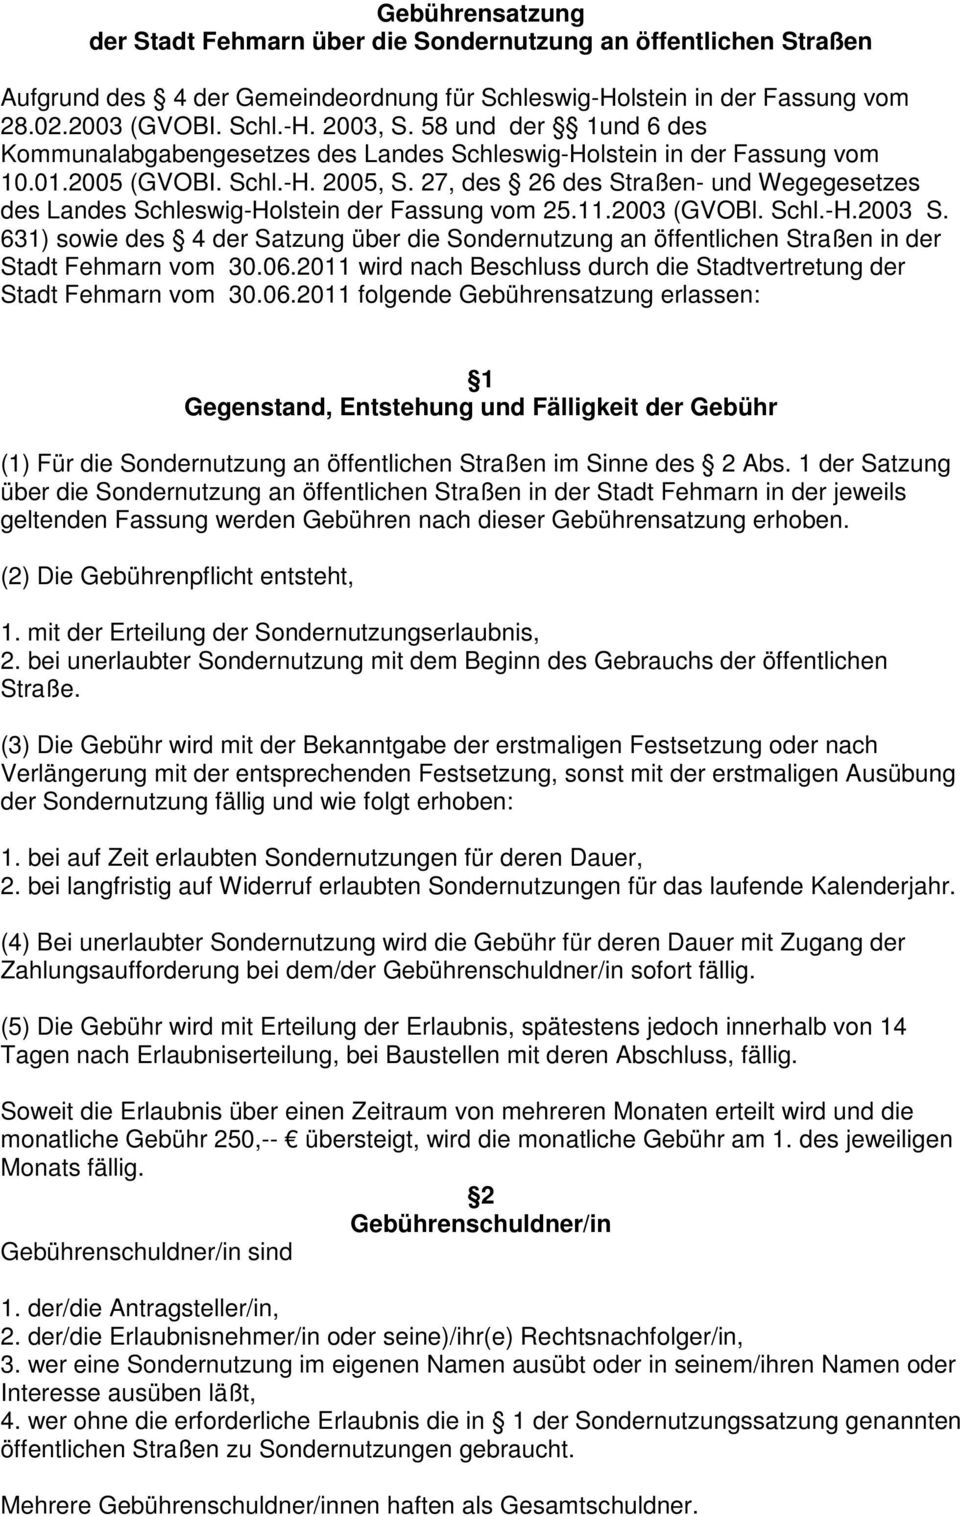 27, des 26 des Straßen- und Wegegesetzes des Landes Schleswig-Holstein der Fassung vom 25.11.2003 (GVOBl. Schl.-H.2003 S.